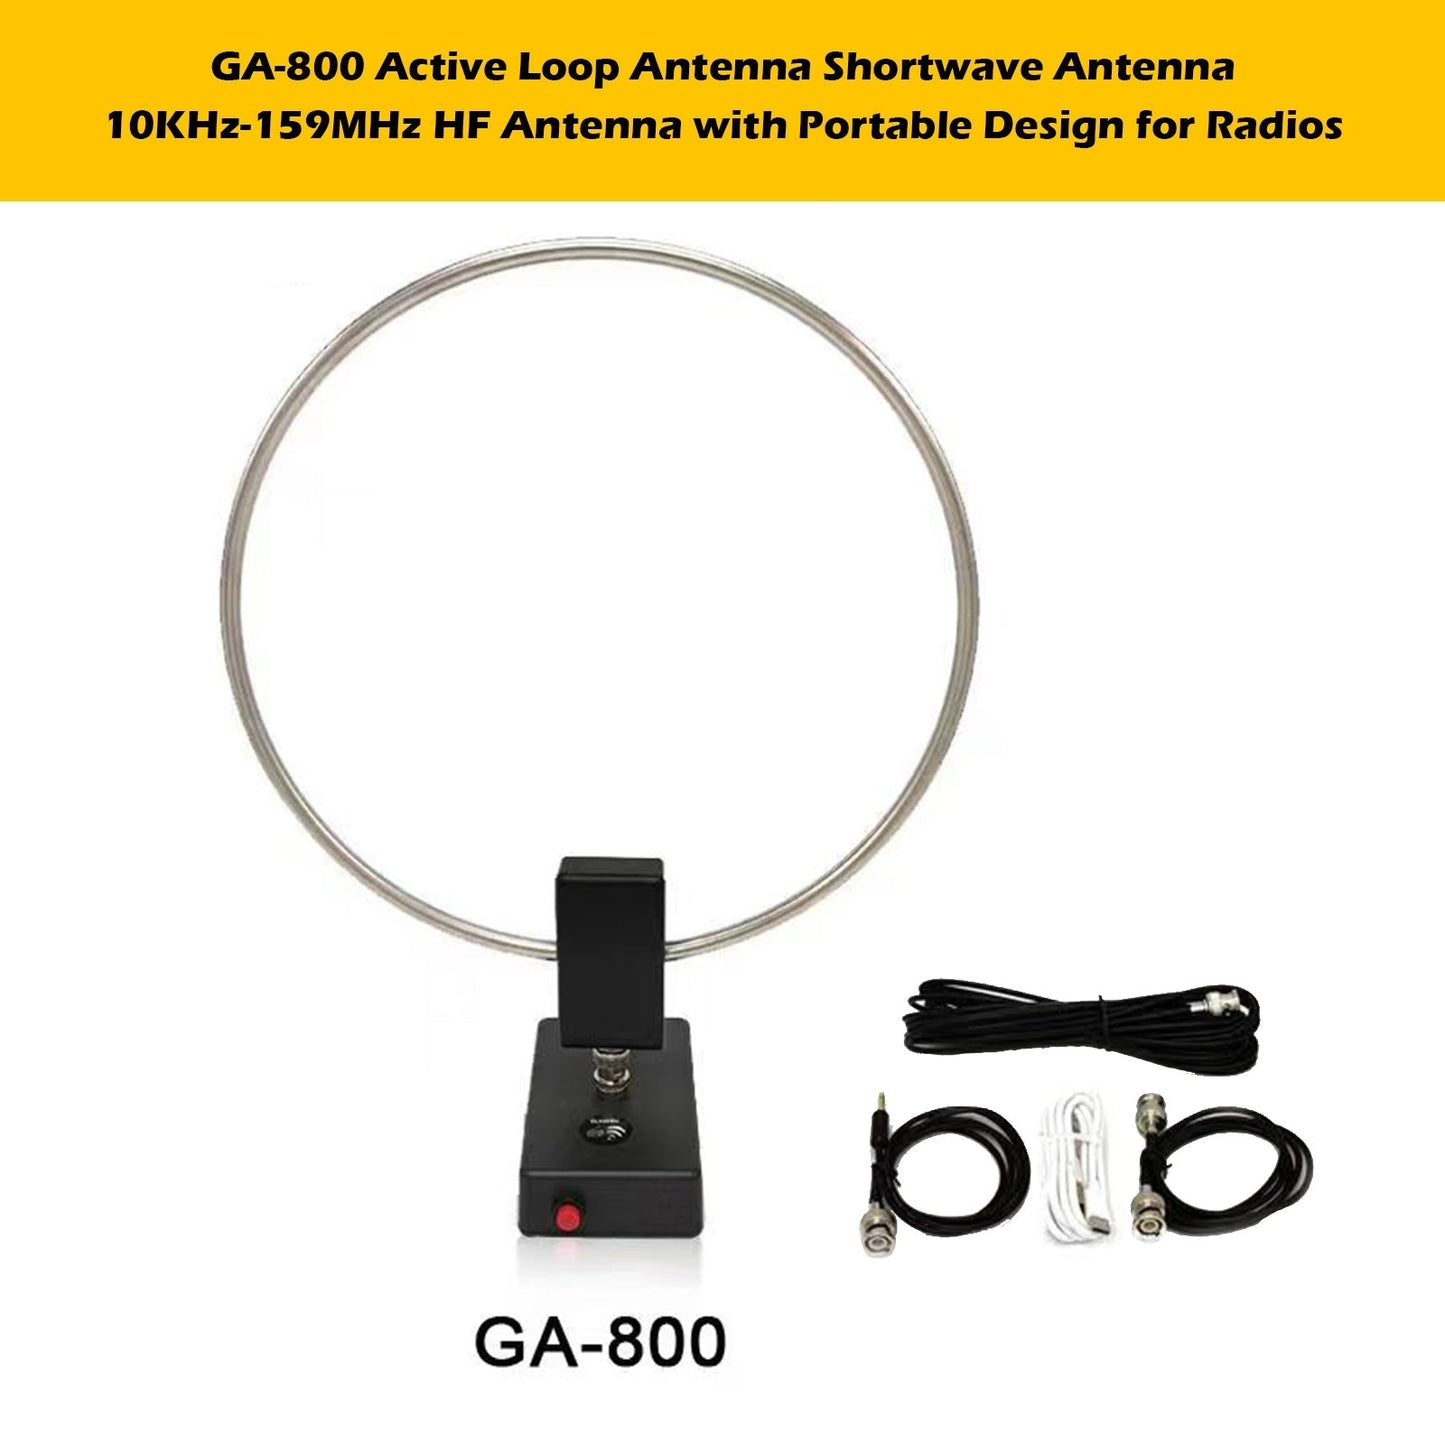 Portable HF Radios GA-800 Active Loop Antenna Shortwave Antenna 10KHz-159MHz